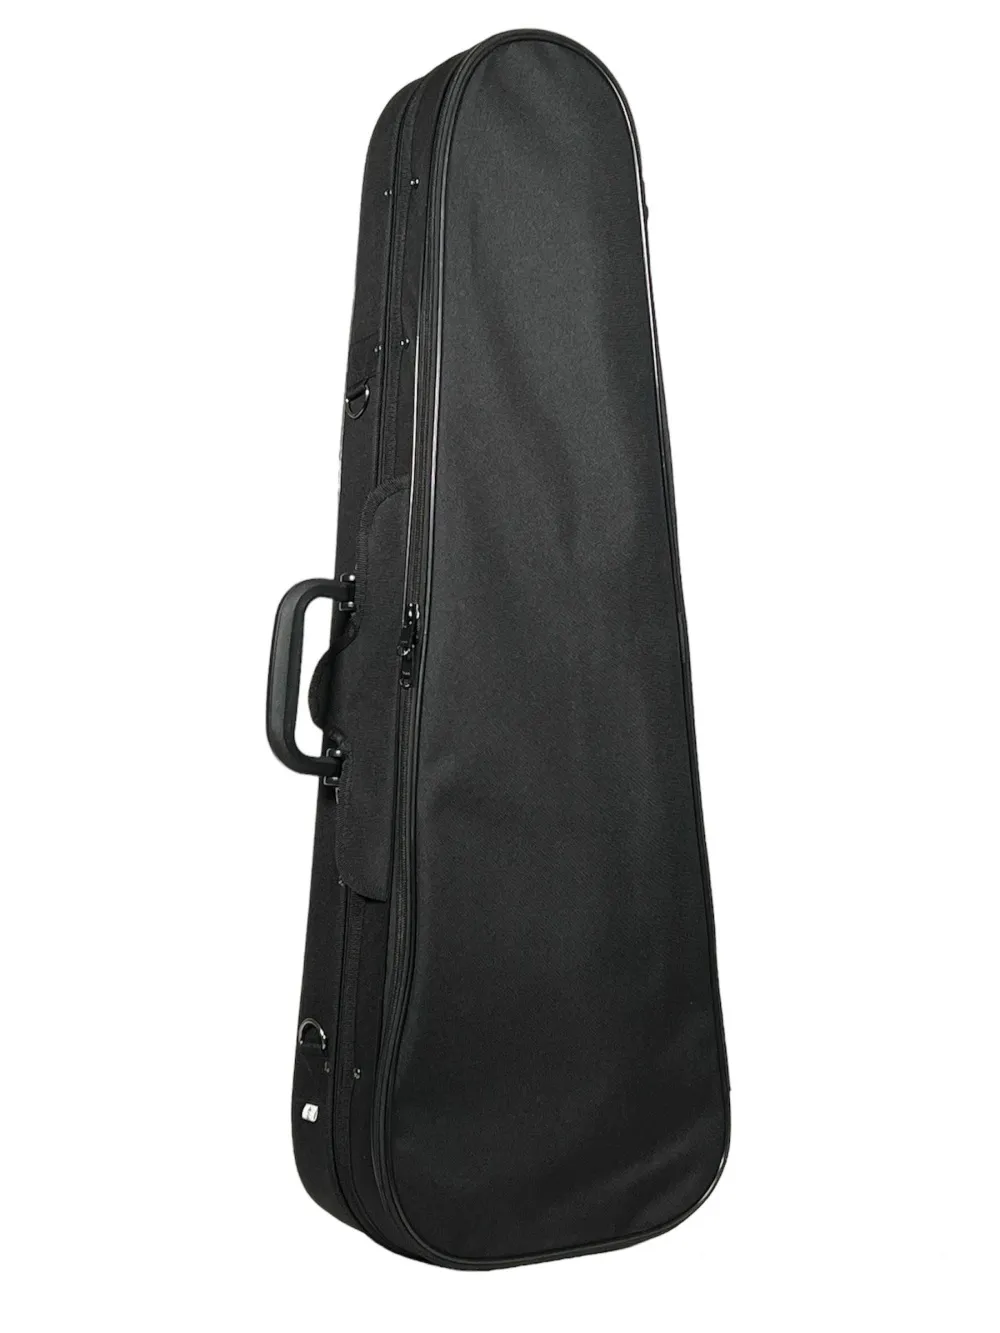 Detailansicht von oben eines Petz Violin (Geige) Form Etuis mit Schulterstützenfach in der Farbe außen schwarz, innen rot